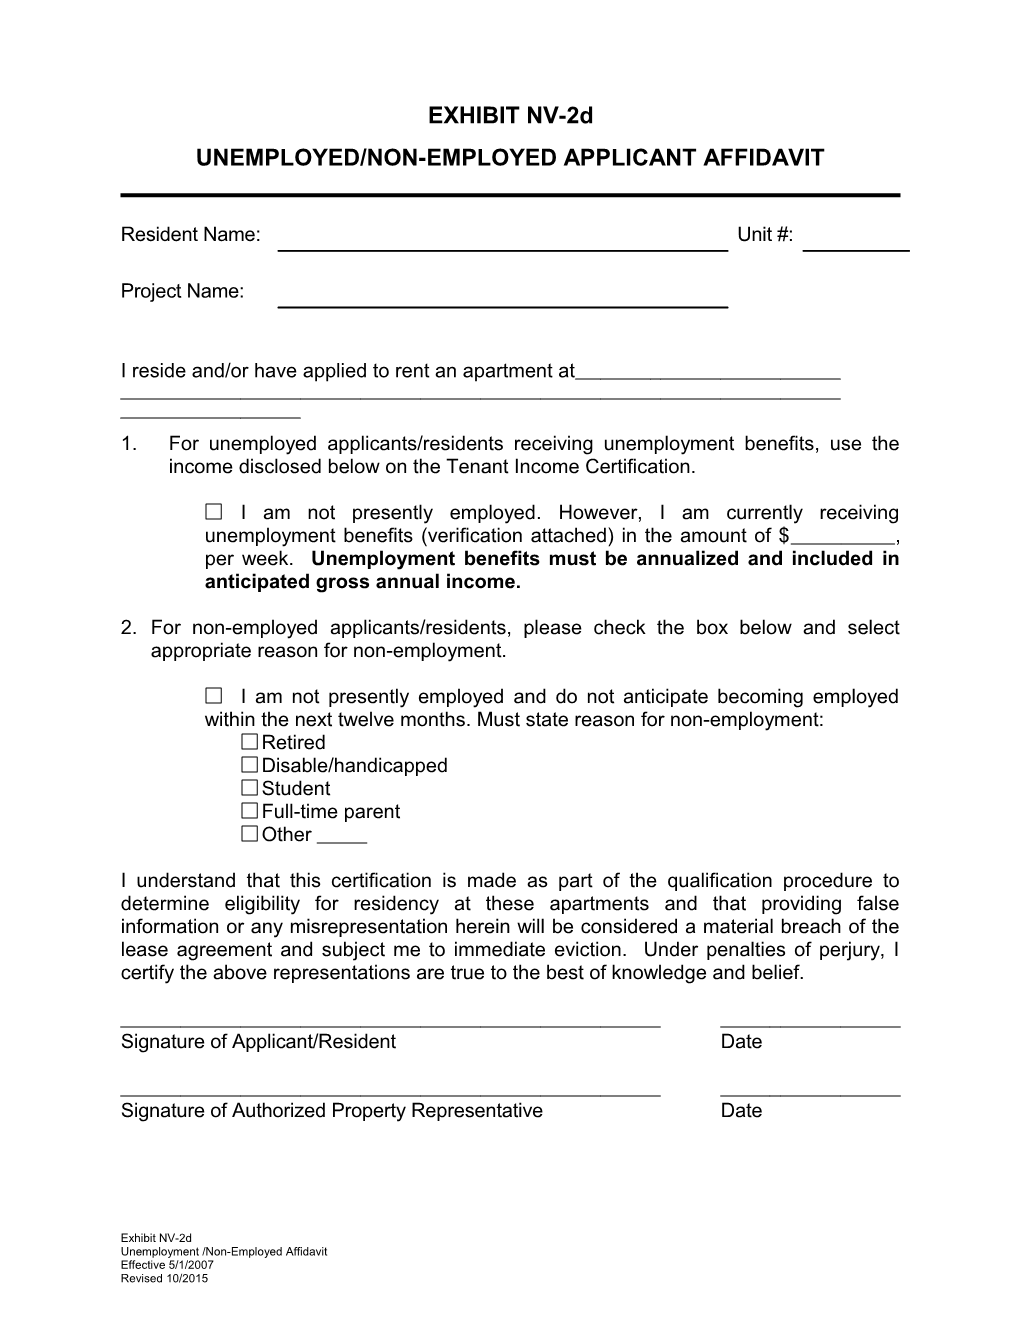 Unemployed/Non-Employed Applicant Affidavit